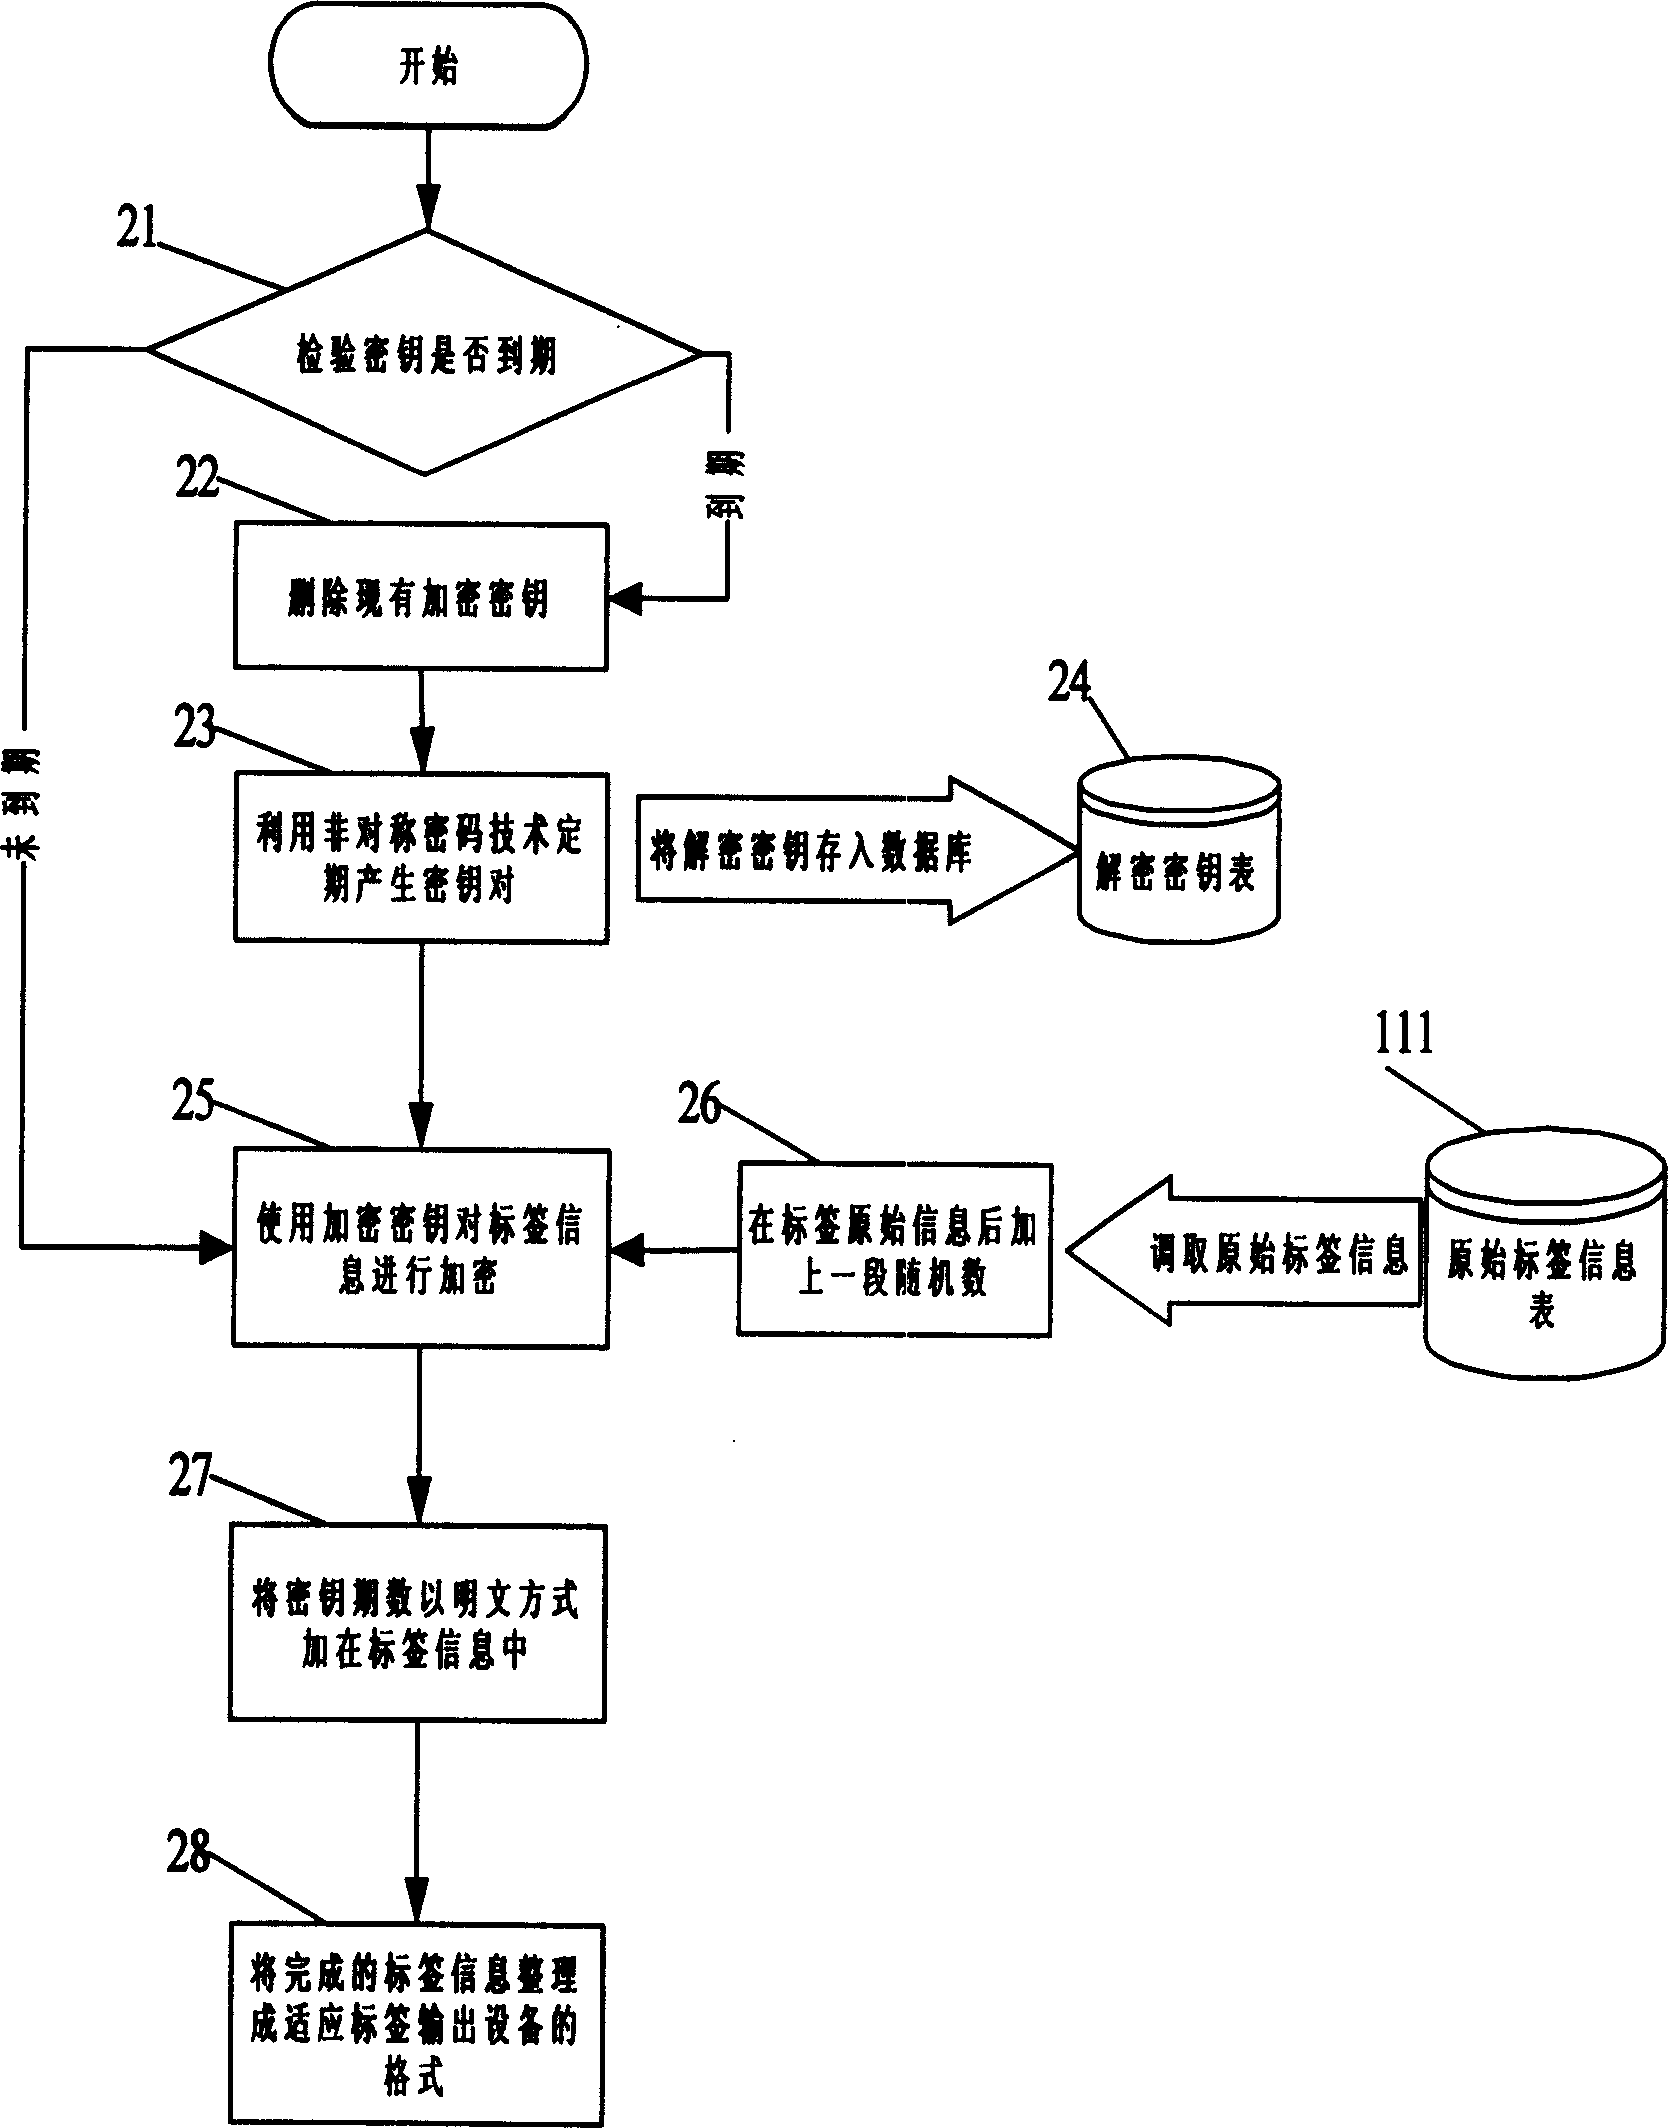 Anti-fake method using non-symmetric cipher technology